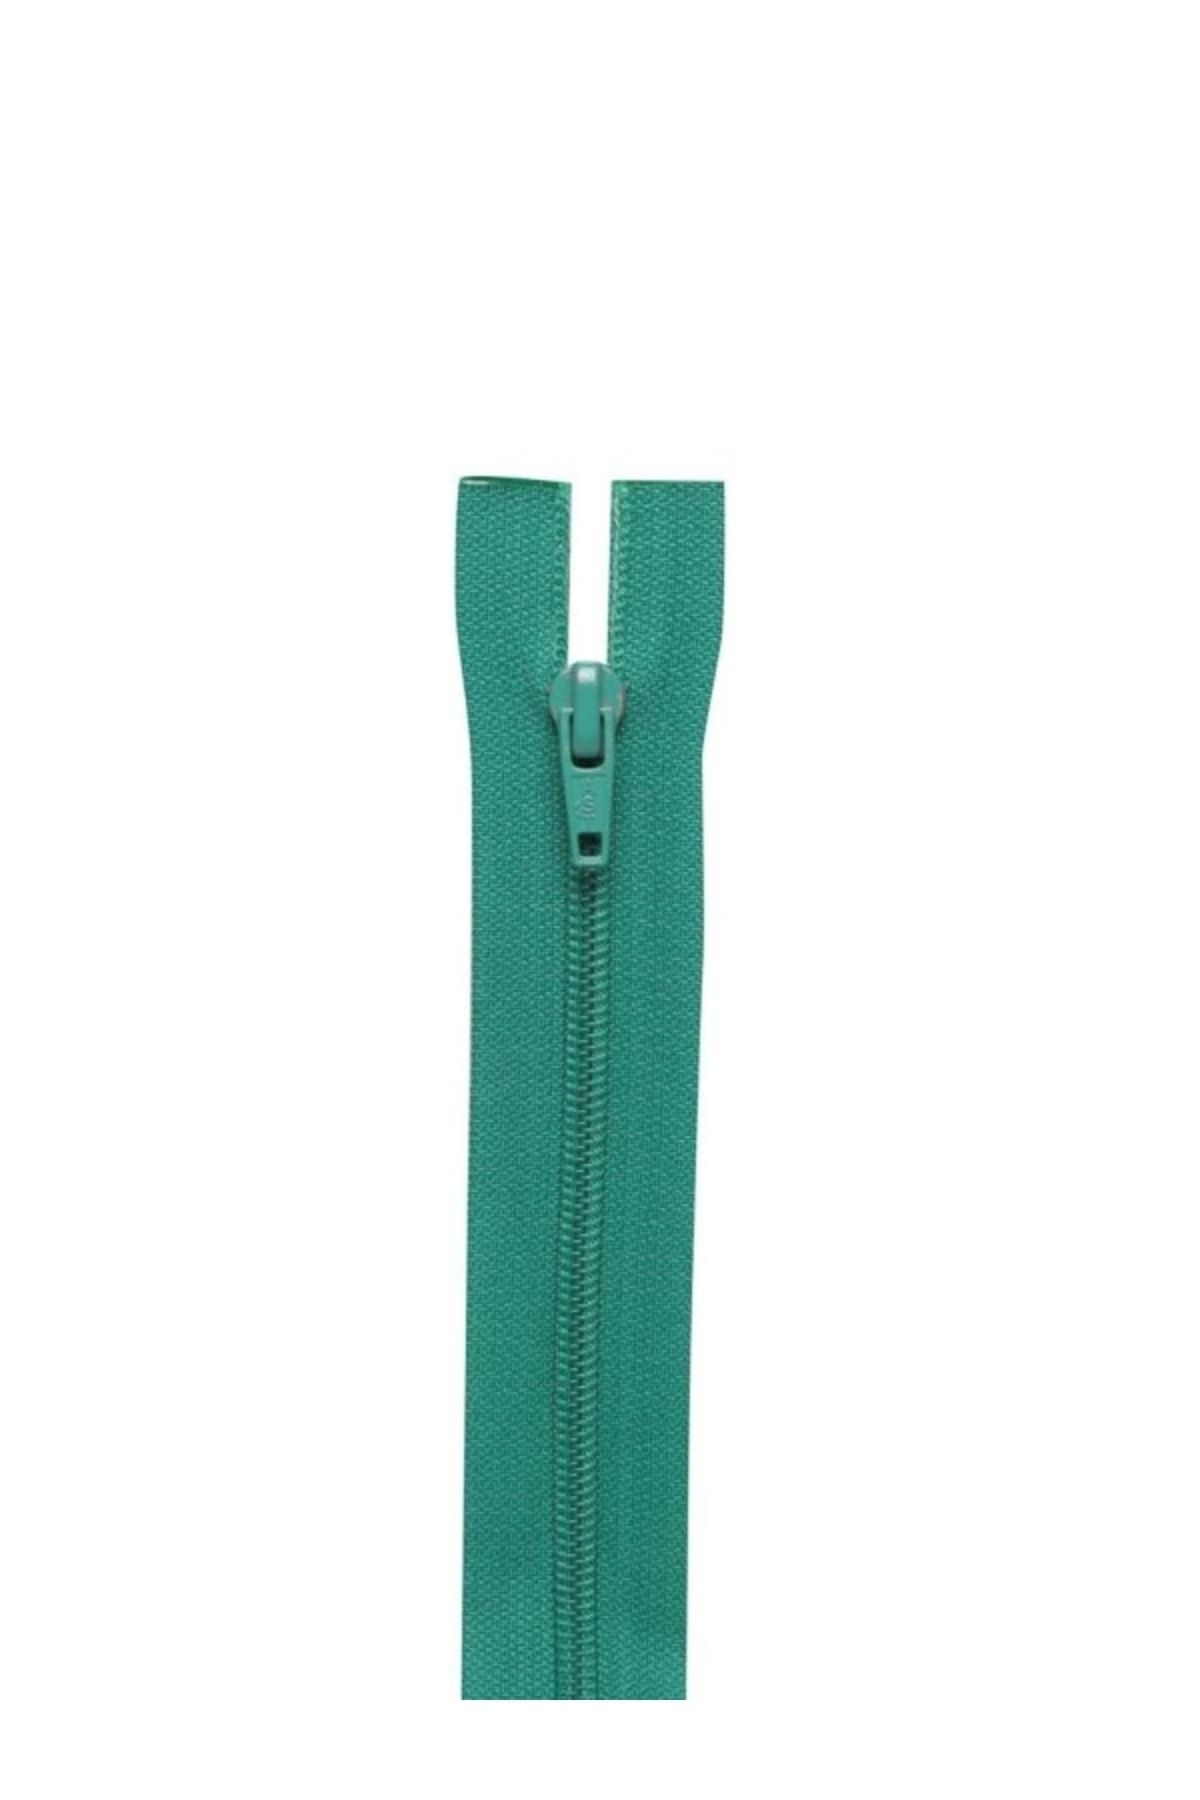 Simisso Eşofman Fermuarı 60 cm | Açık Yeşil